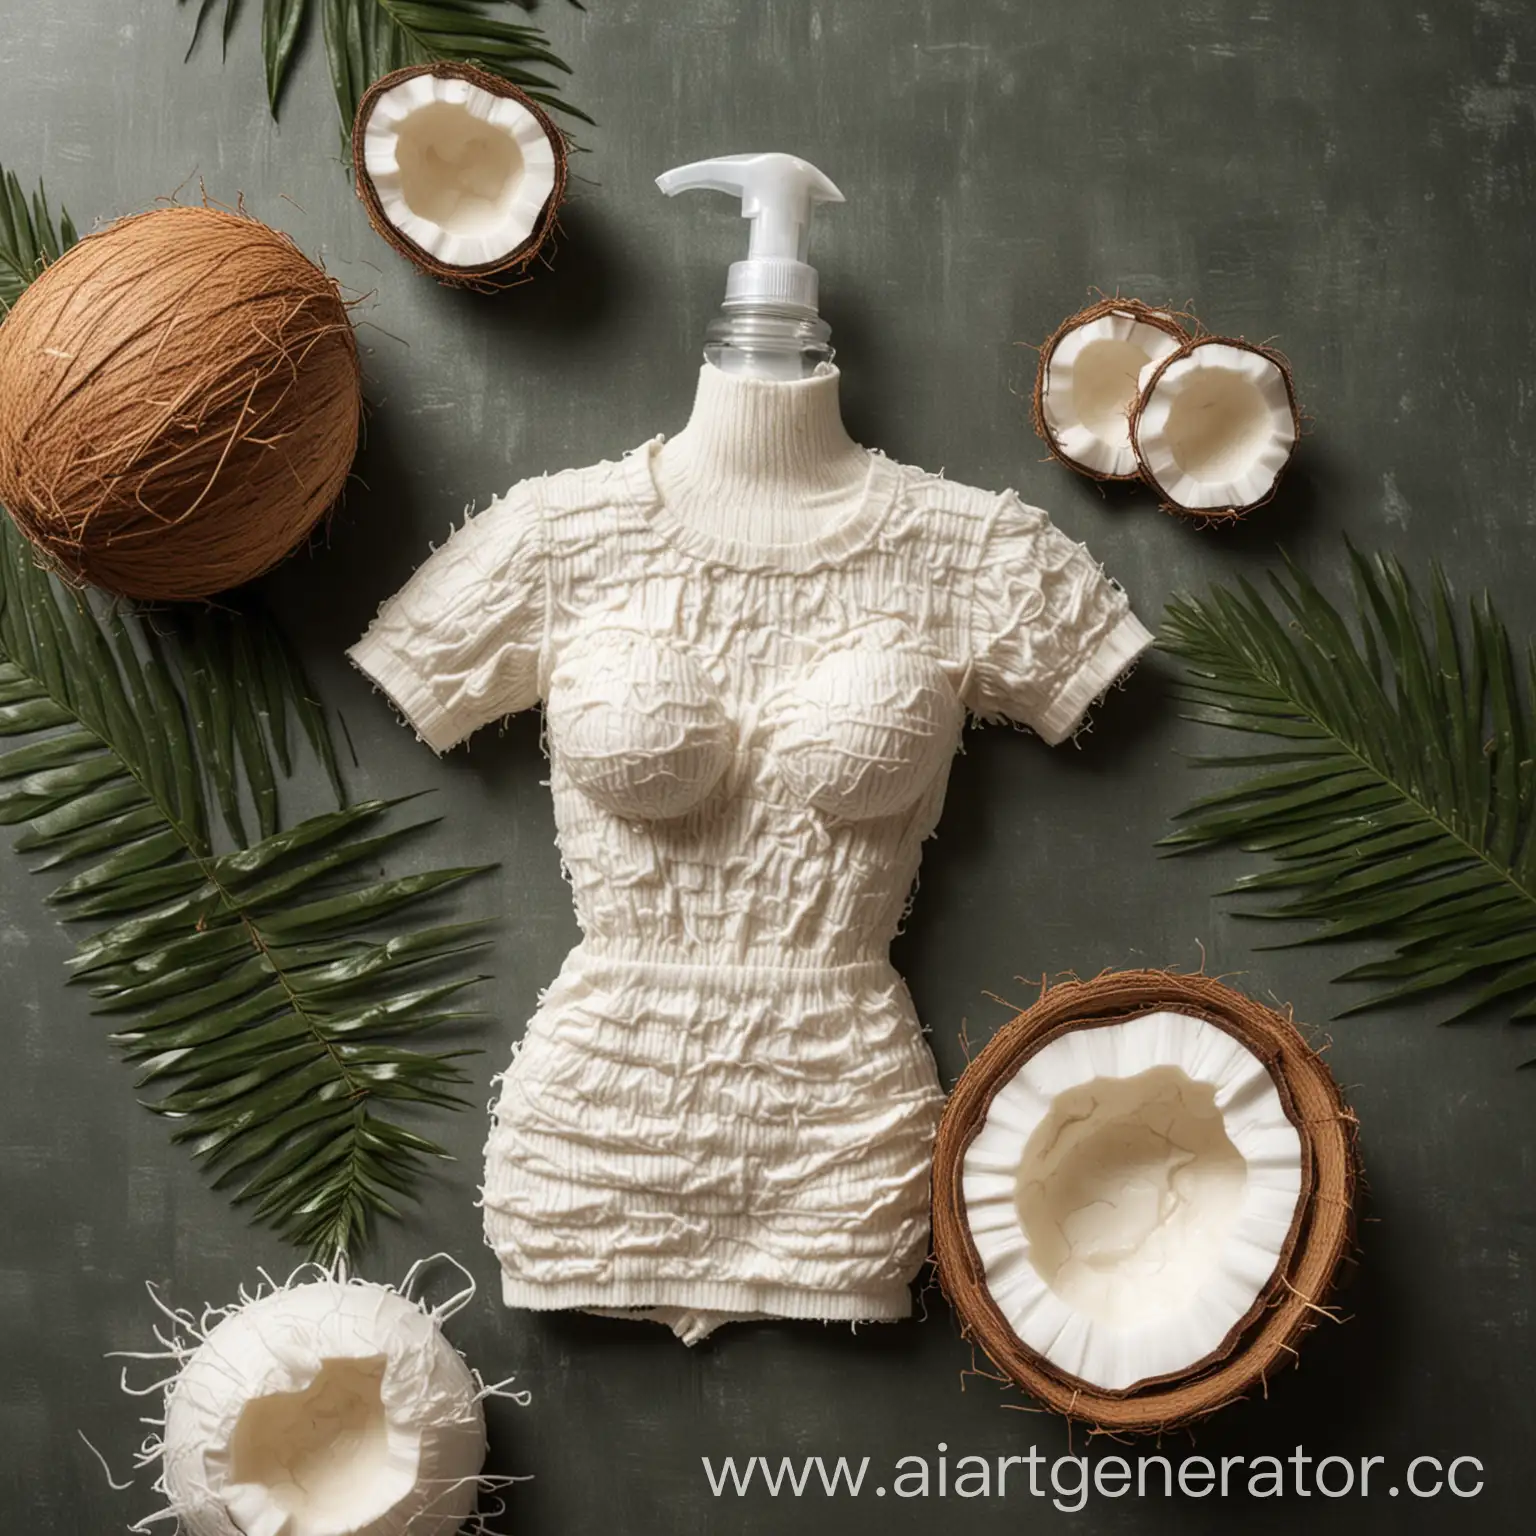 Как бы выглядела одежда в орнаментах кокосового сыродавленного масла